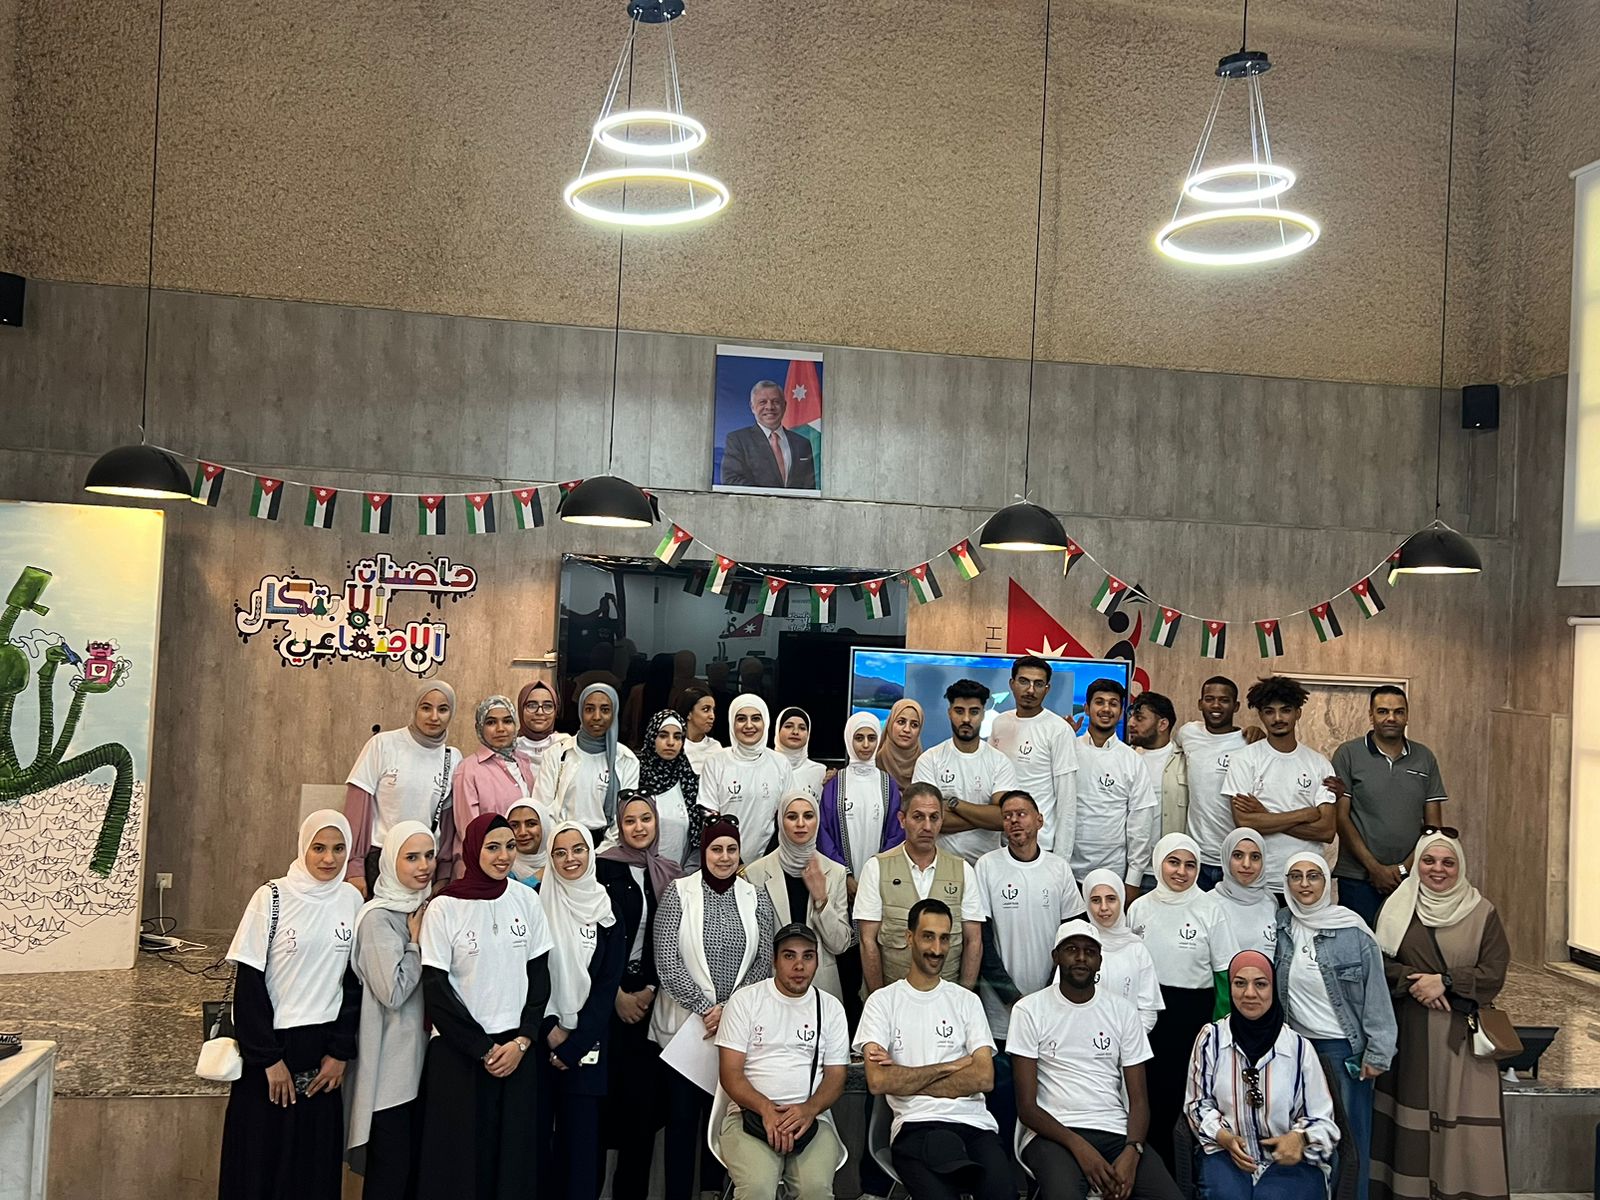 إنطلاق معسكر التربية الإعلامية والمعلوماتية في عمان